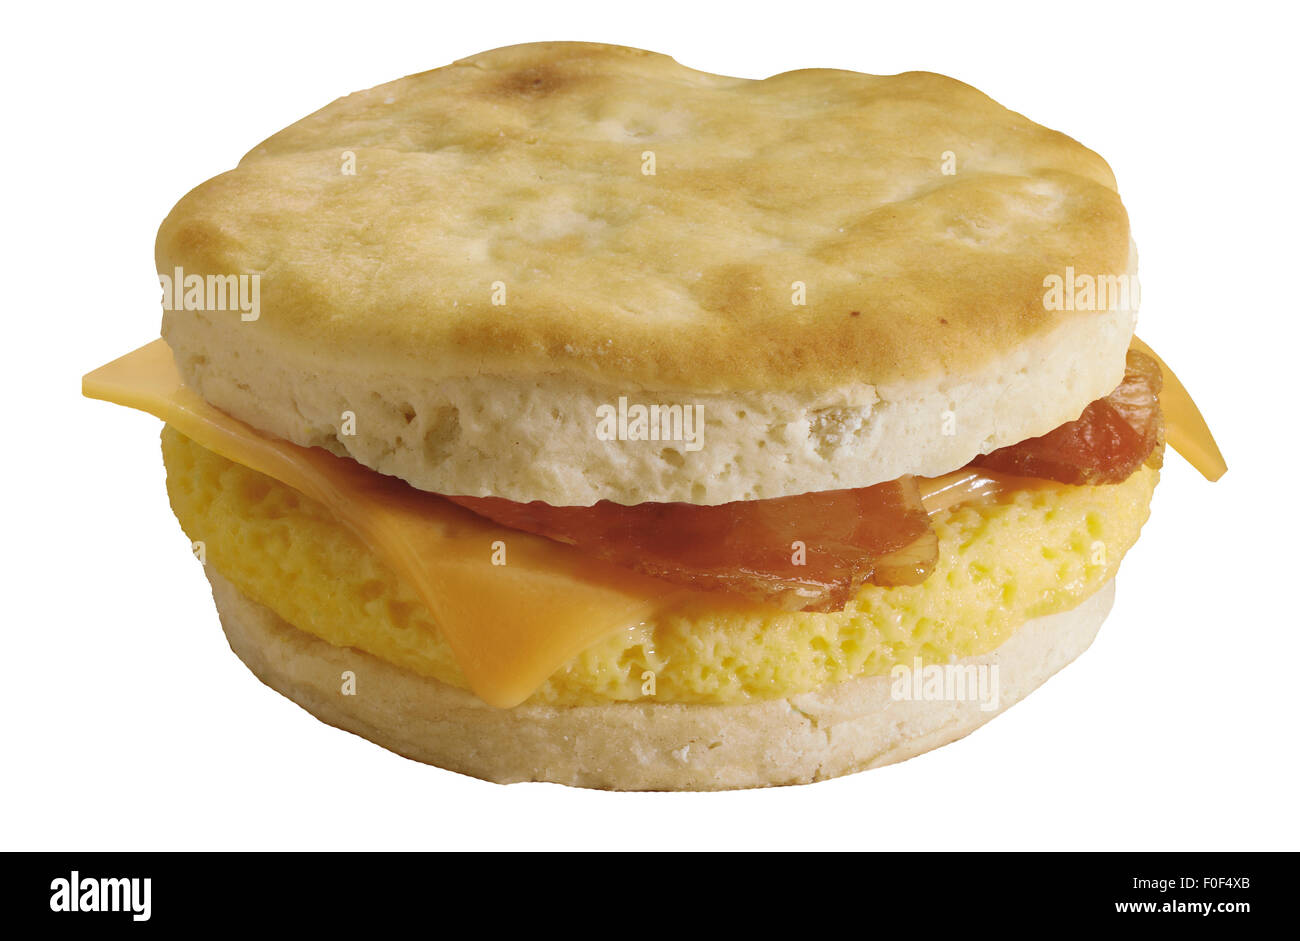 La colazione panino, muffin, formaggio, uova strapazzate e pancetta Foto Stock